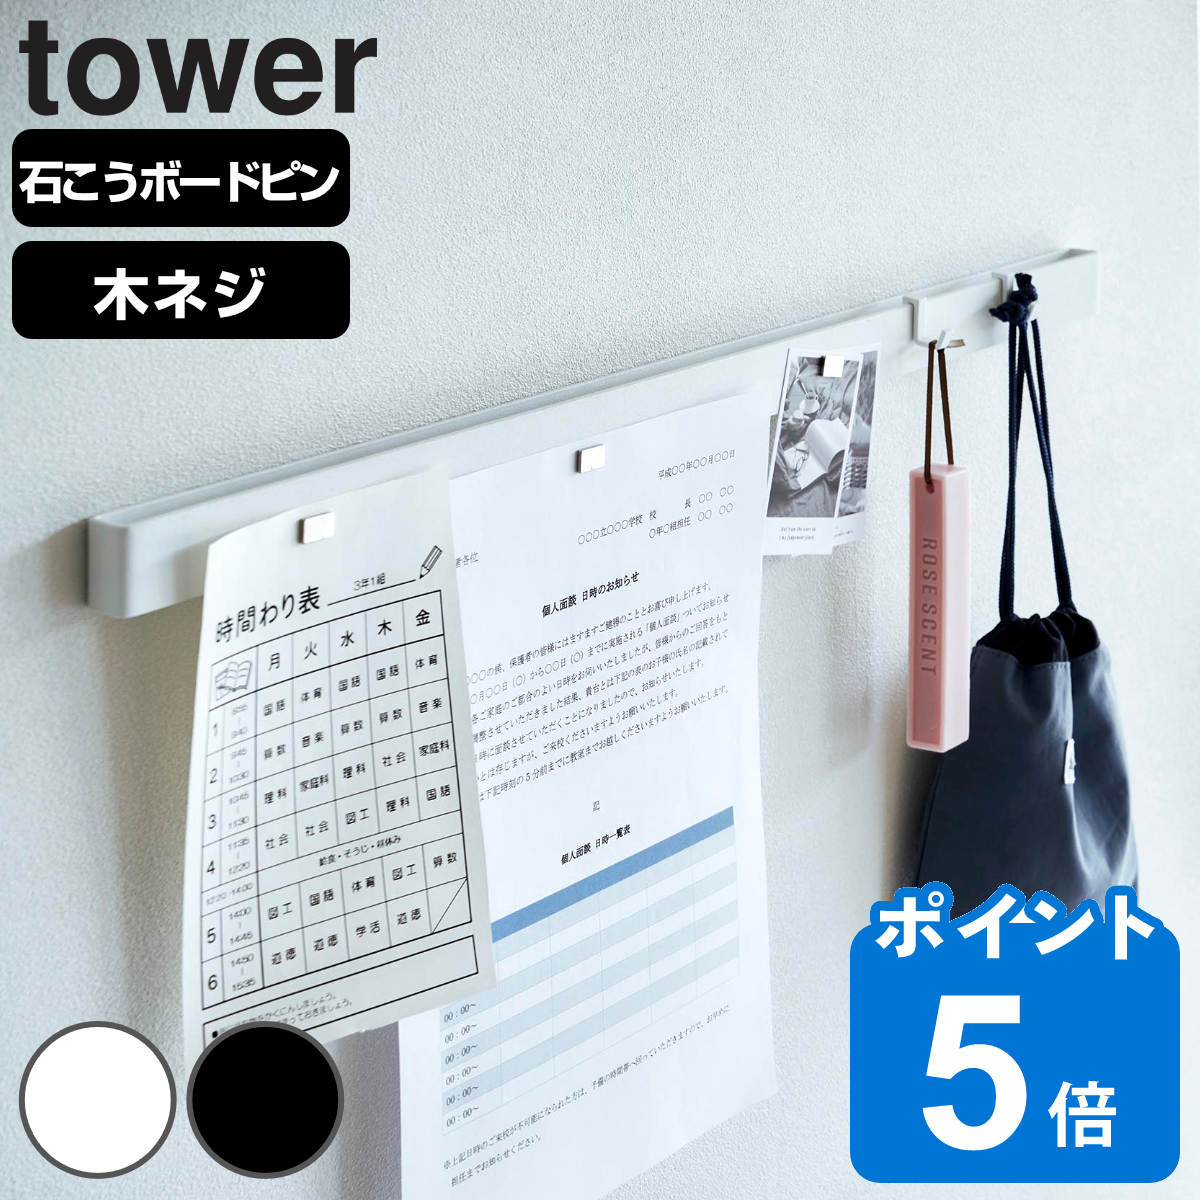 山崎実業 tower 石こうボード壁対応マグネット用スチールバー タワー